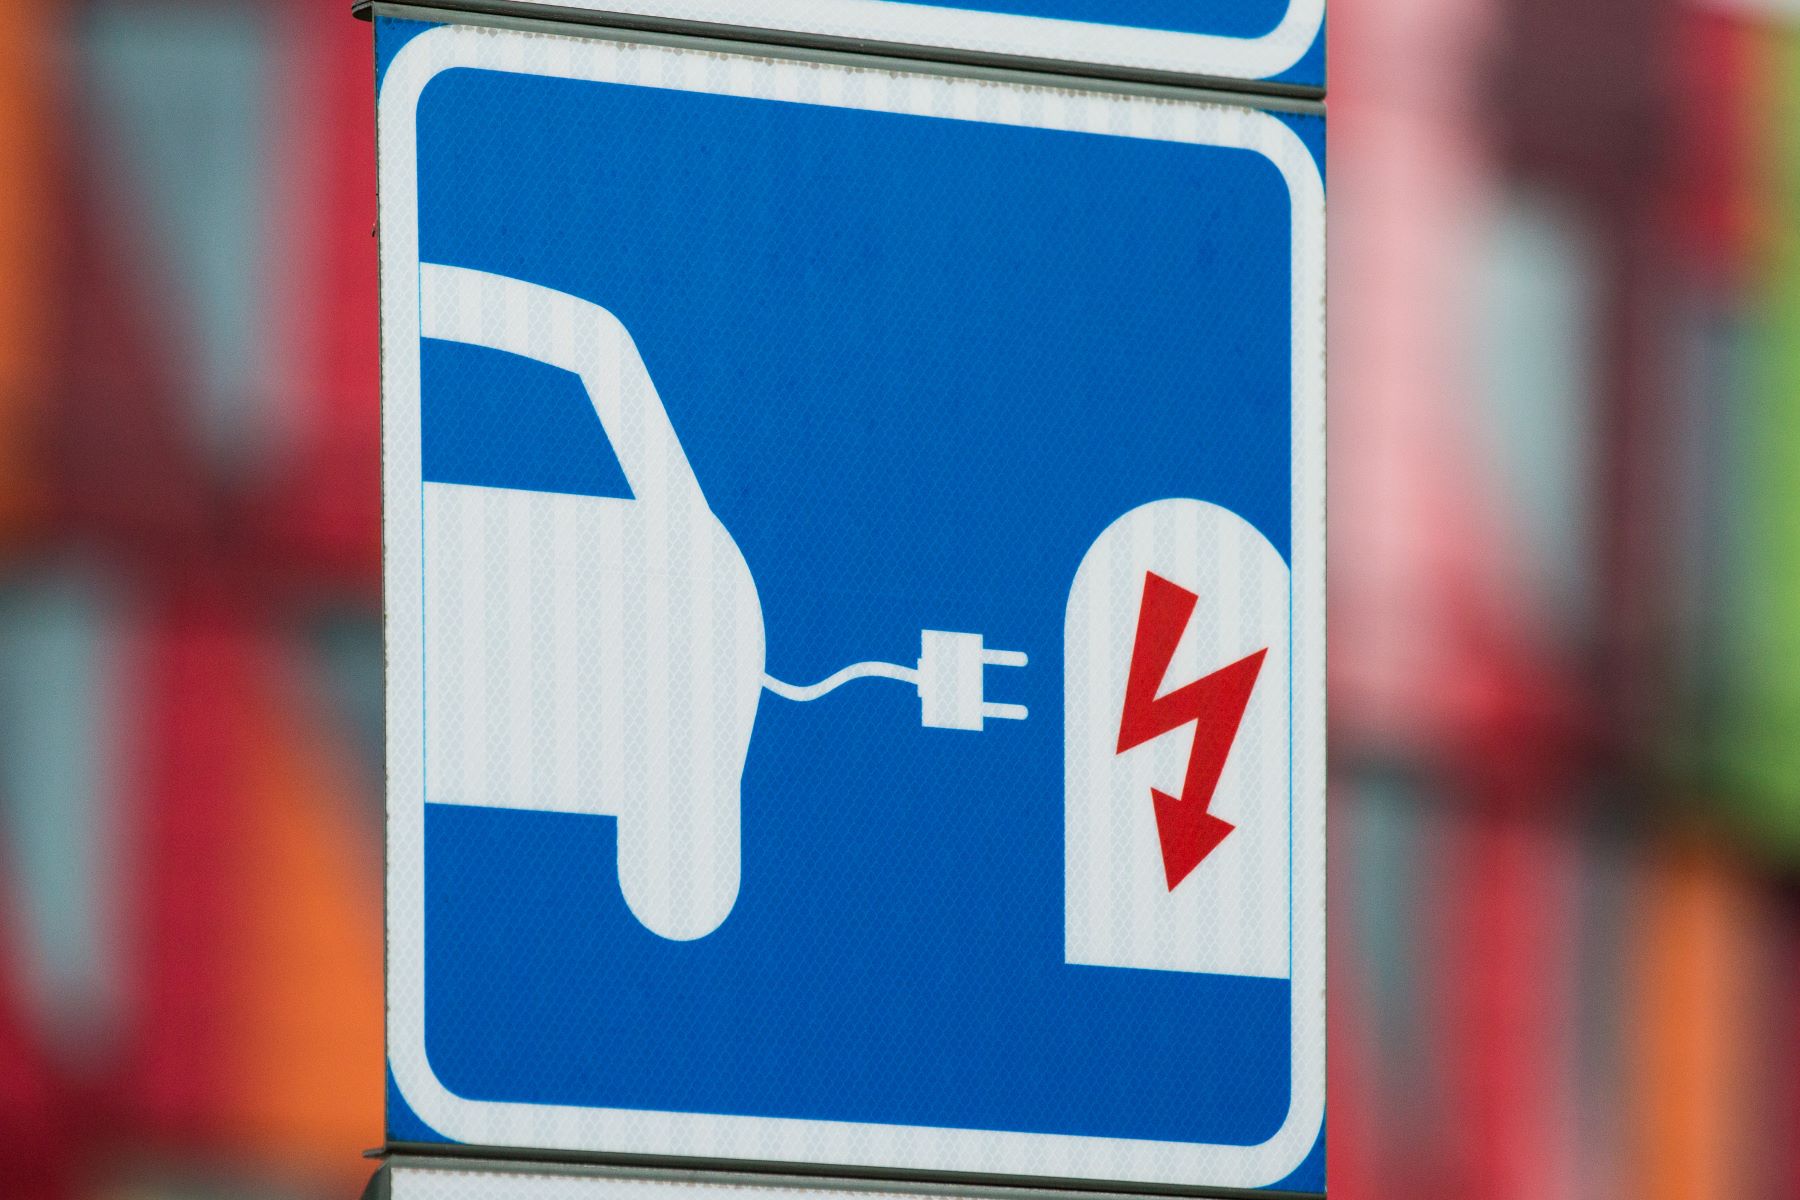 An electric car/electric vehicle (EV) charging station sign at Lindholmen Science Park in Gothenburg, Sweden